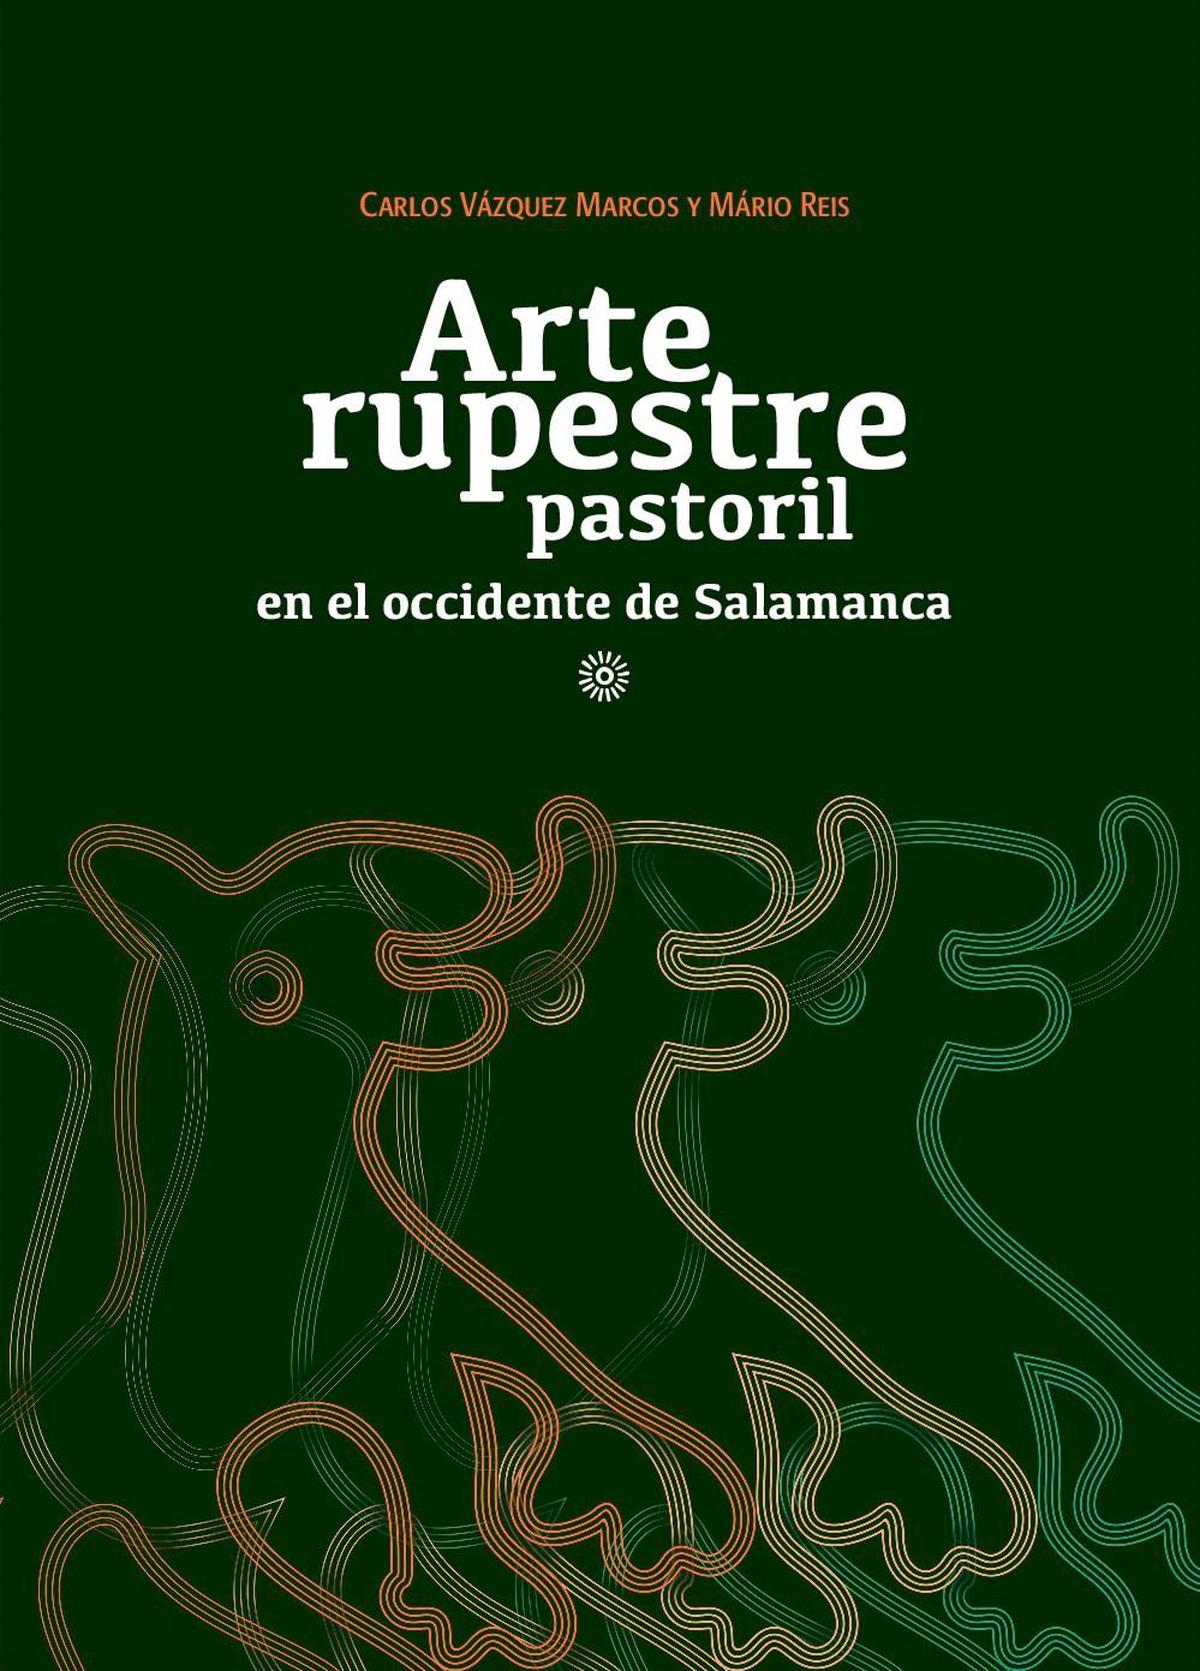 Detalle de la portada del libro “Arte rupestre pastoril en el occidente de Salamanca”